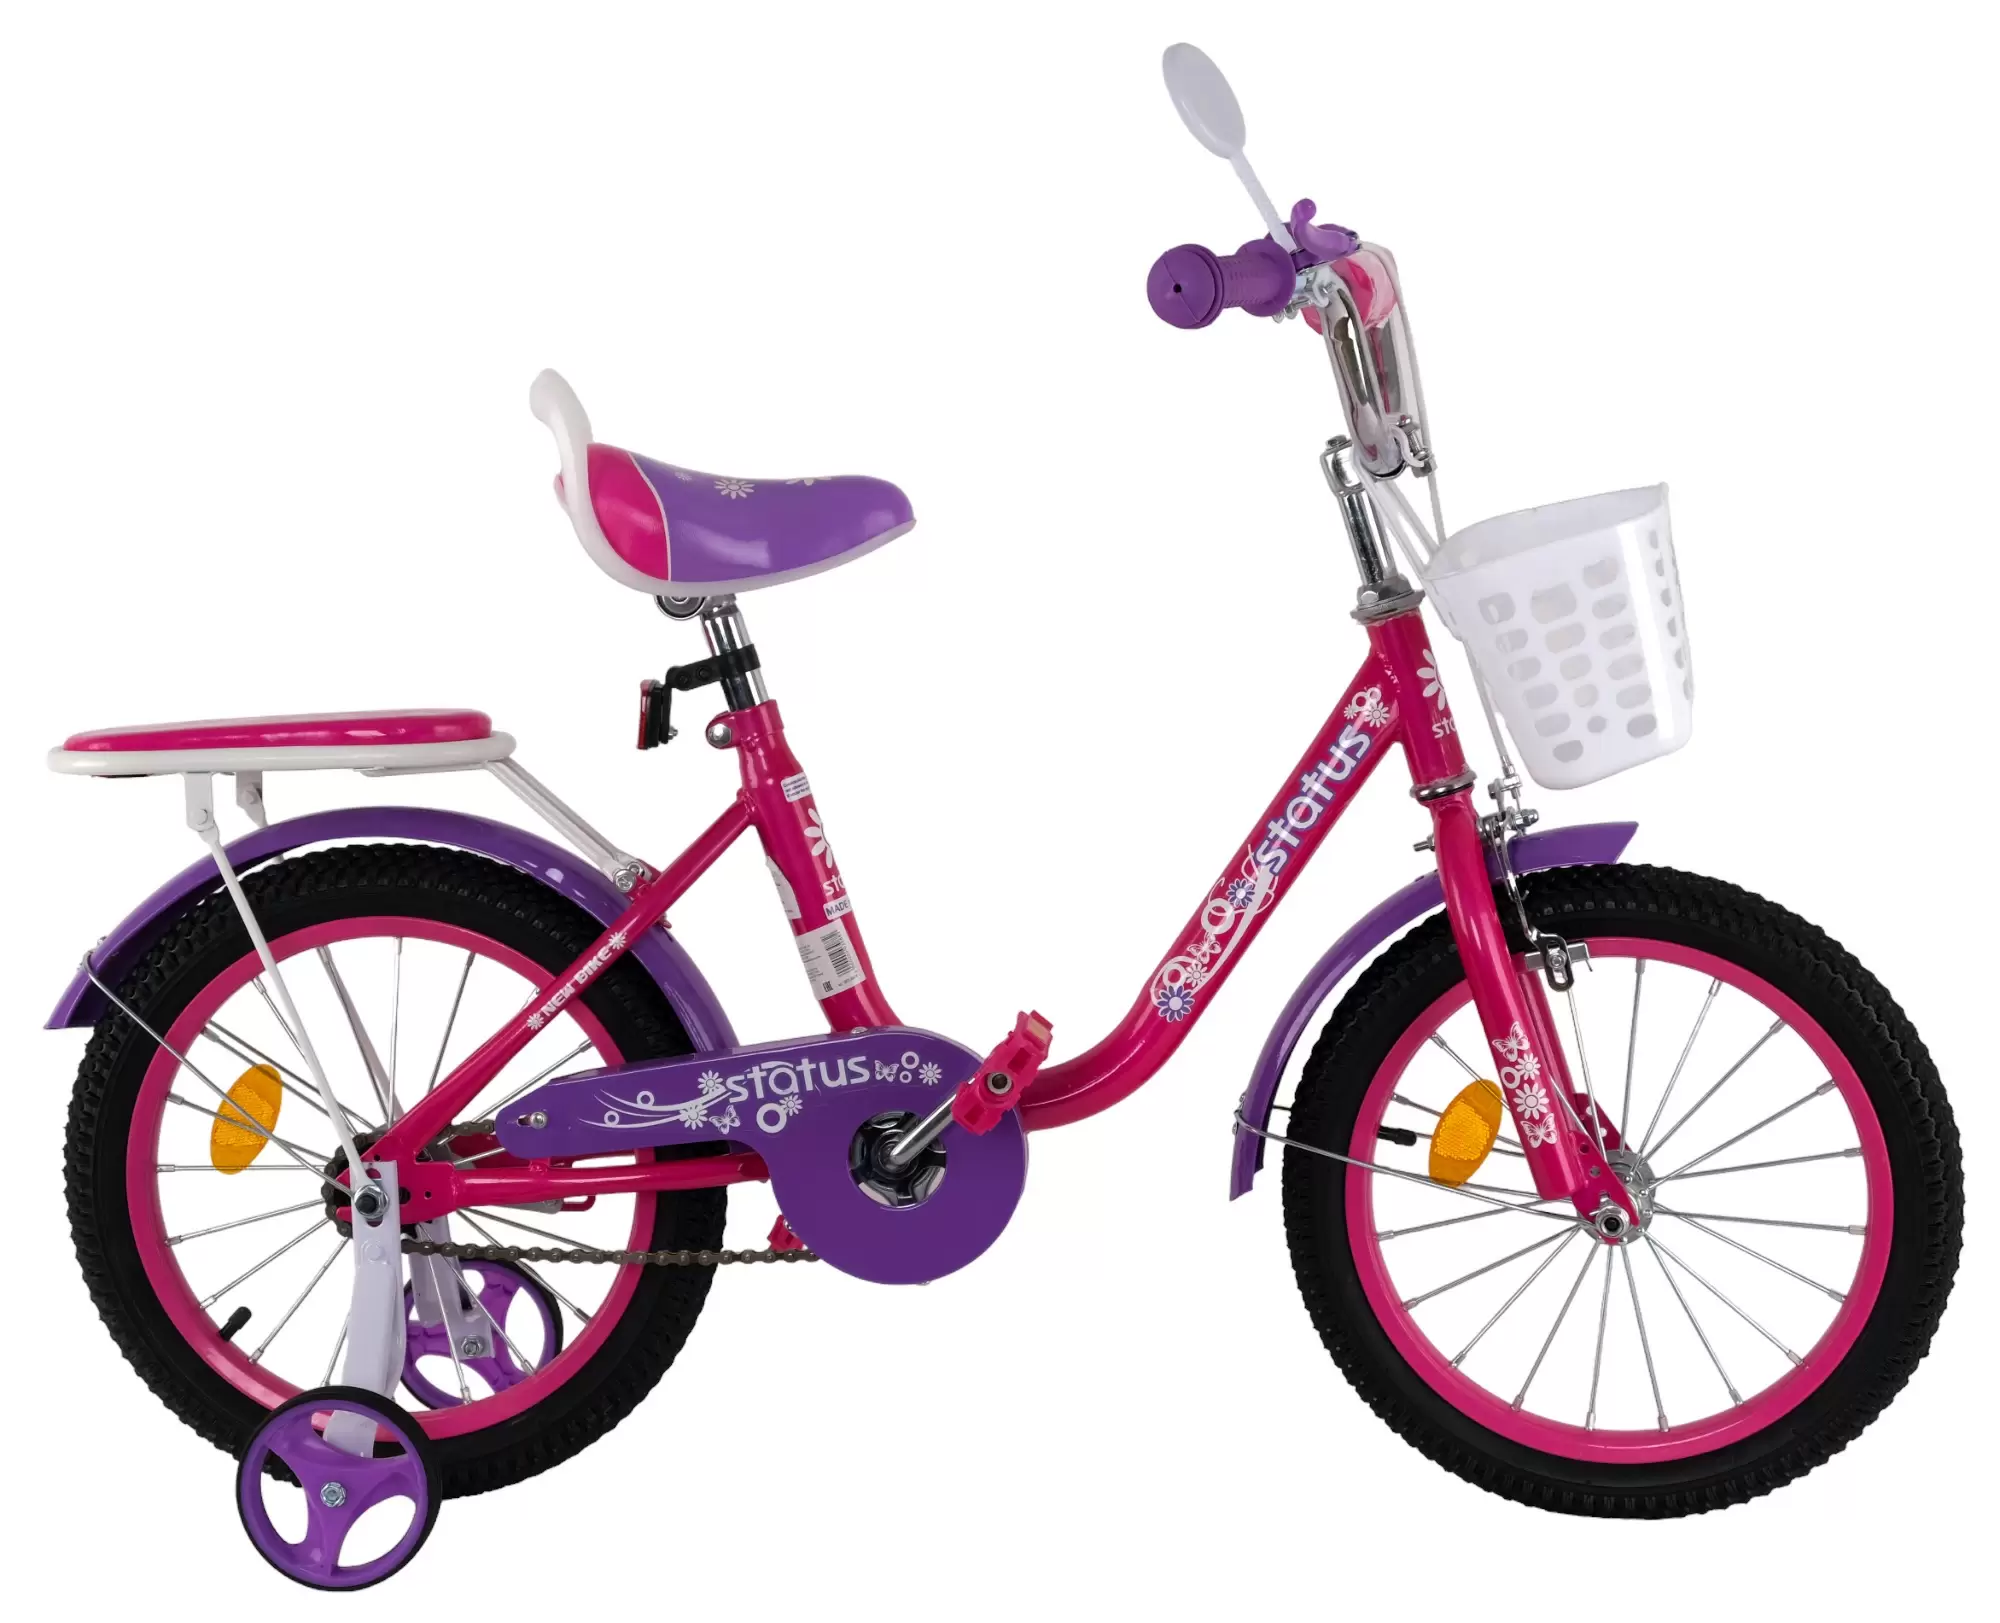 Велосипед Status 16 дюймов фиолетовый (5 - 6 лет)